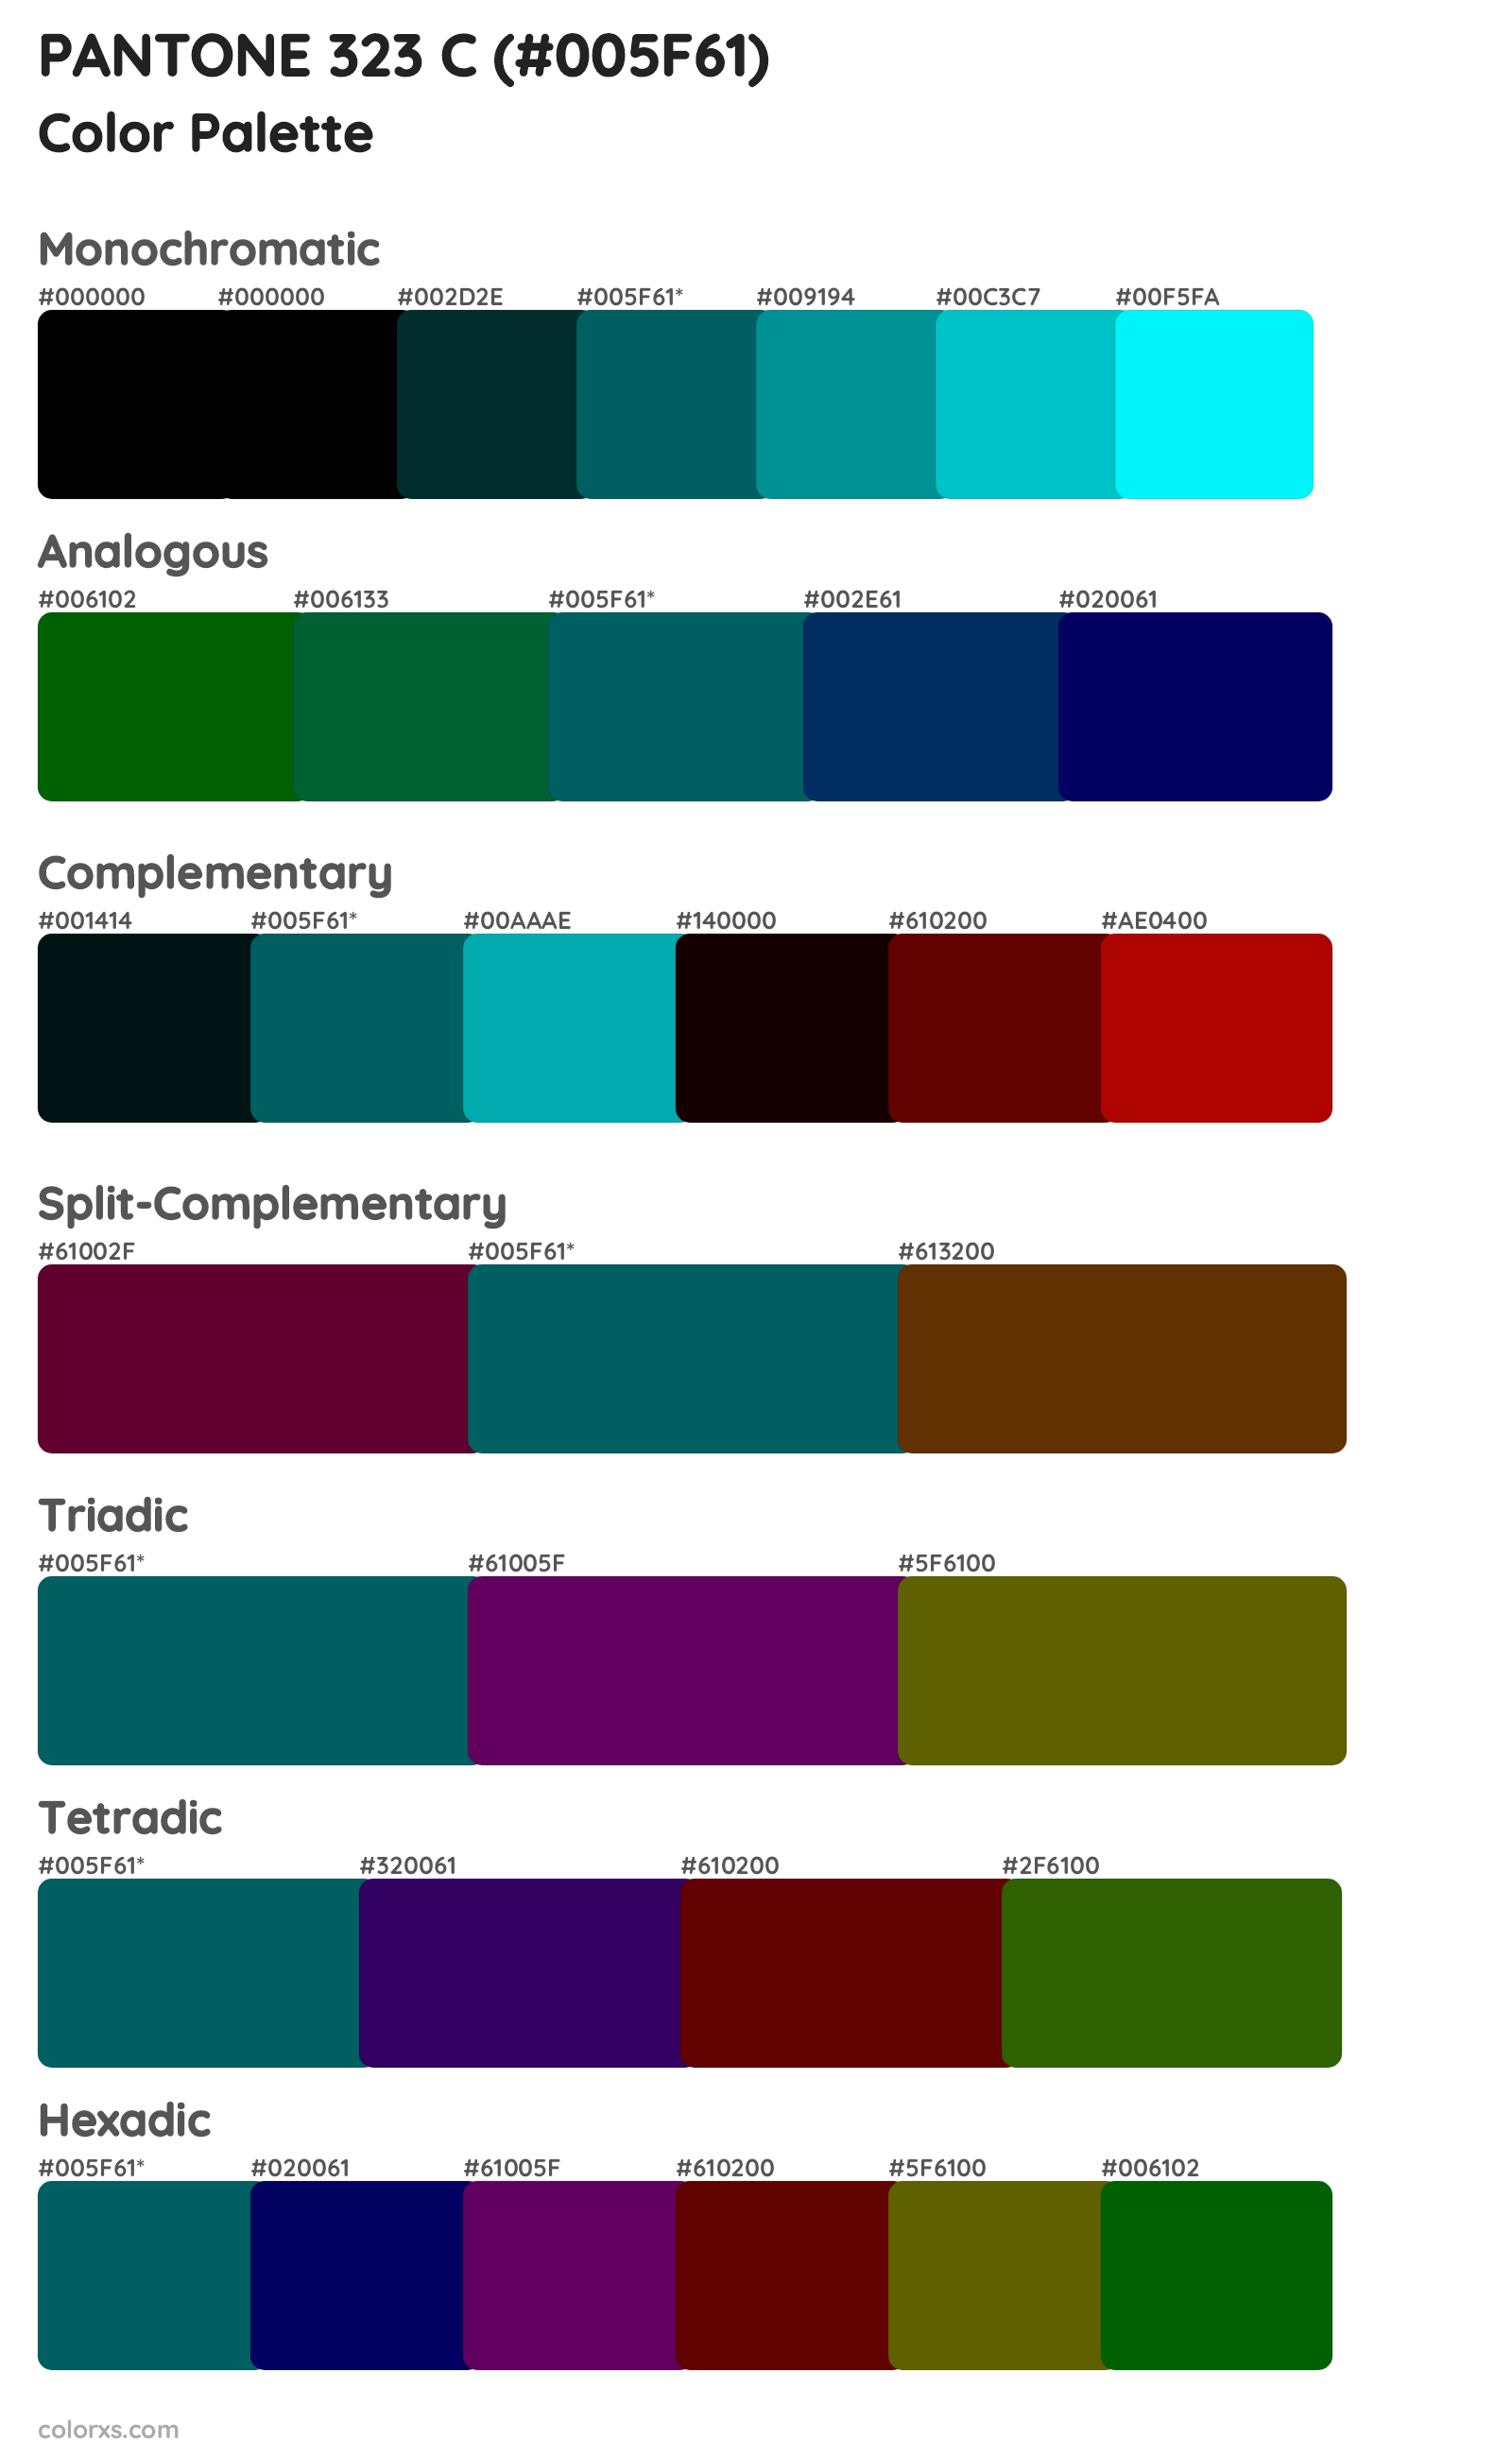 PANTONE 323 C Color Scheme Palettes